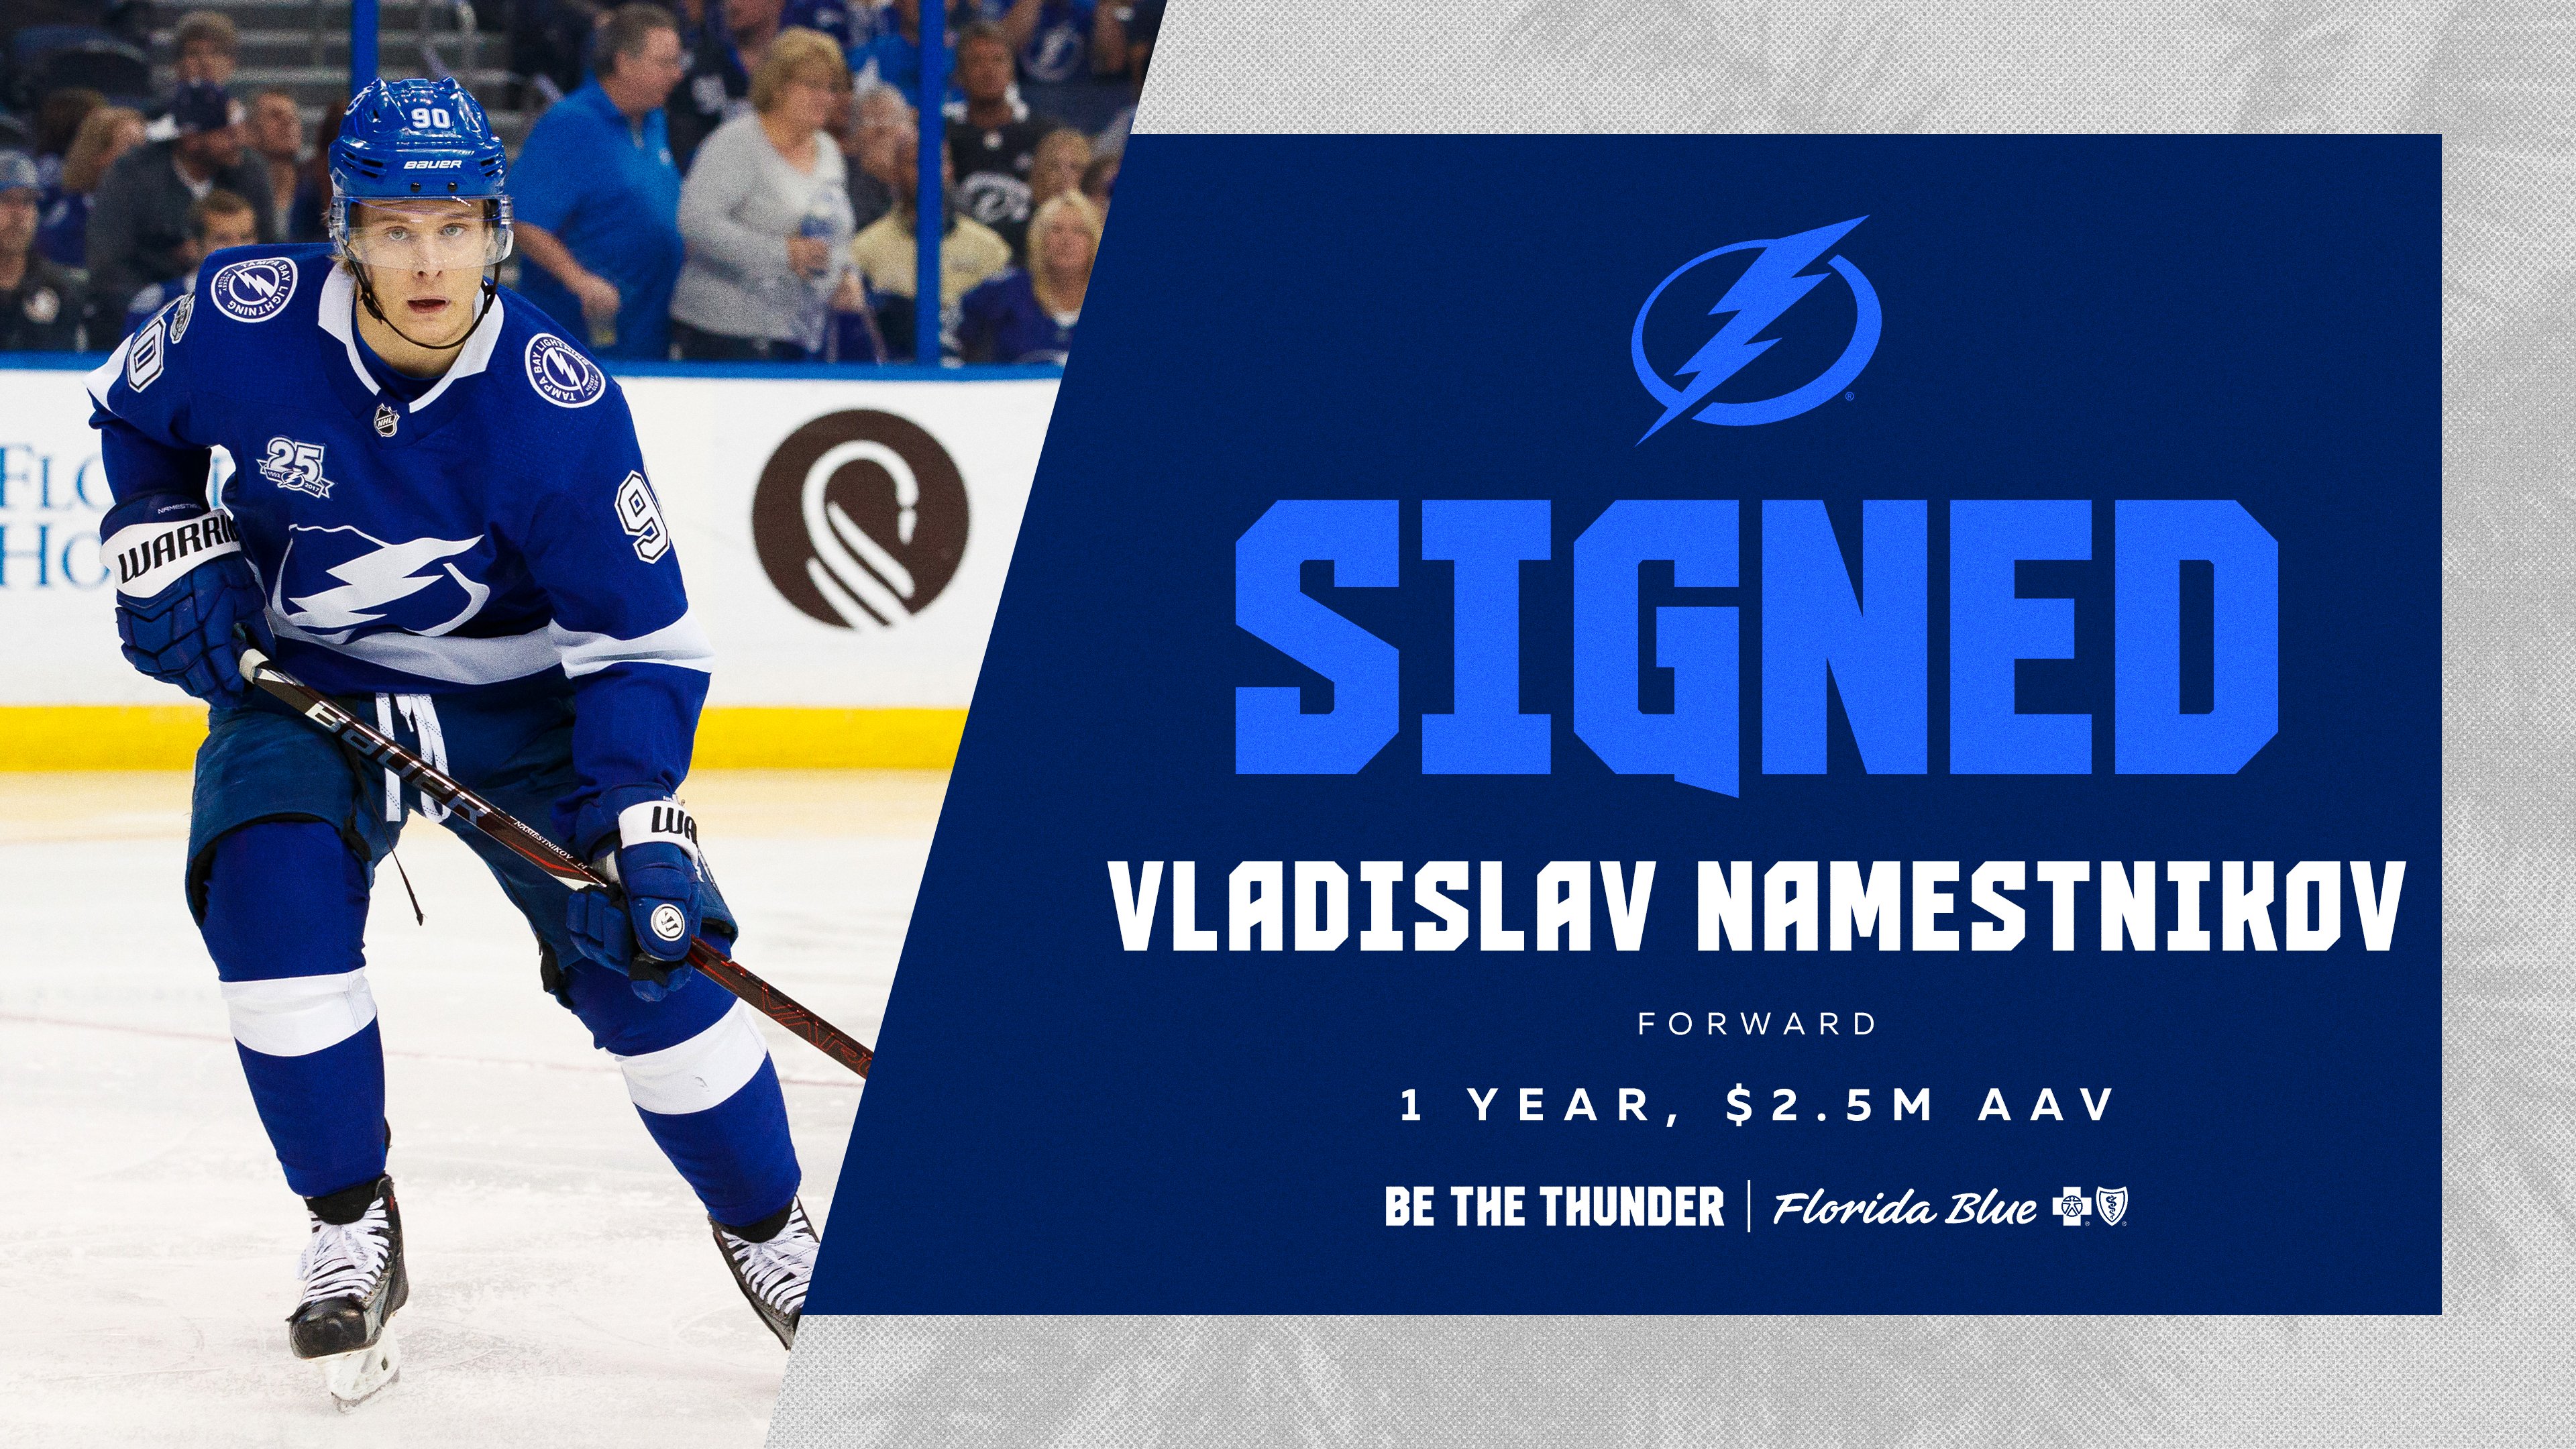 Tampa Bay Lightning F Vladislav Namestnikov quickly becoming a target